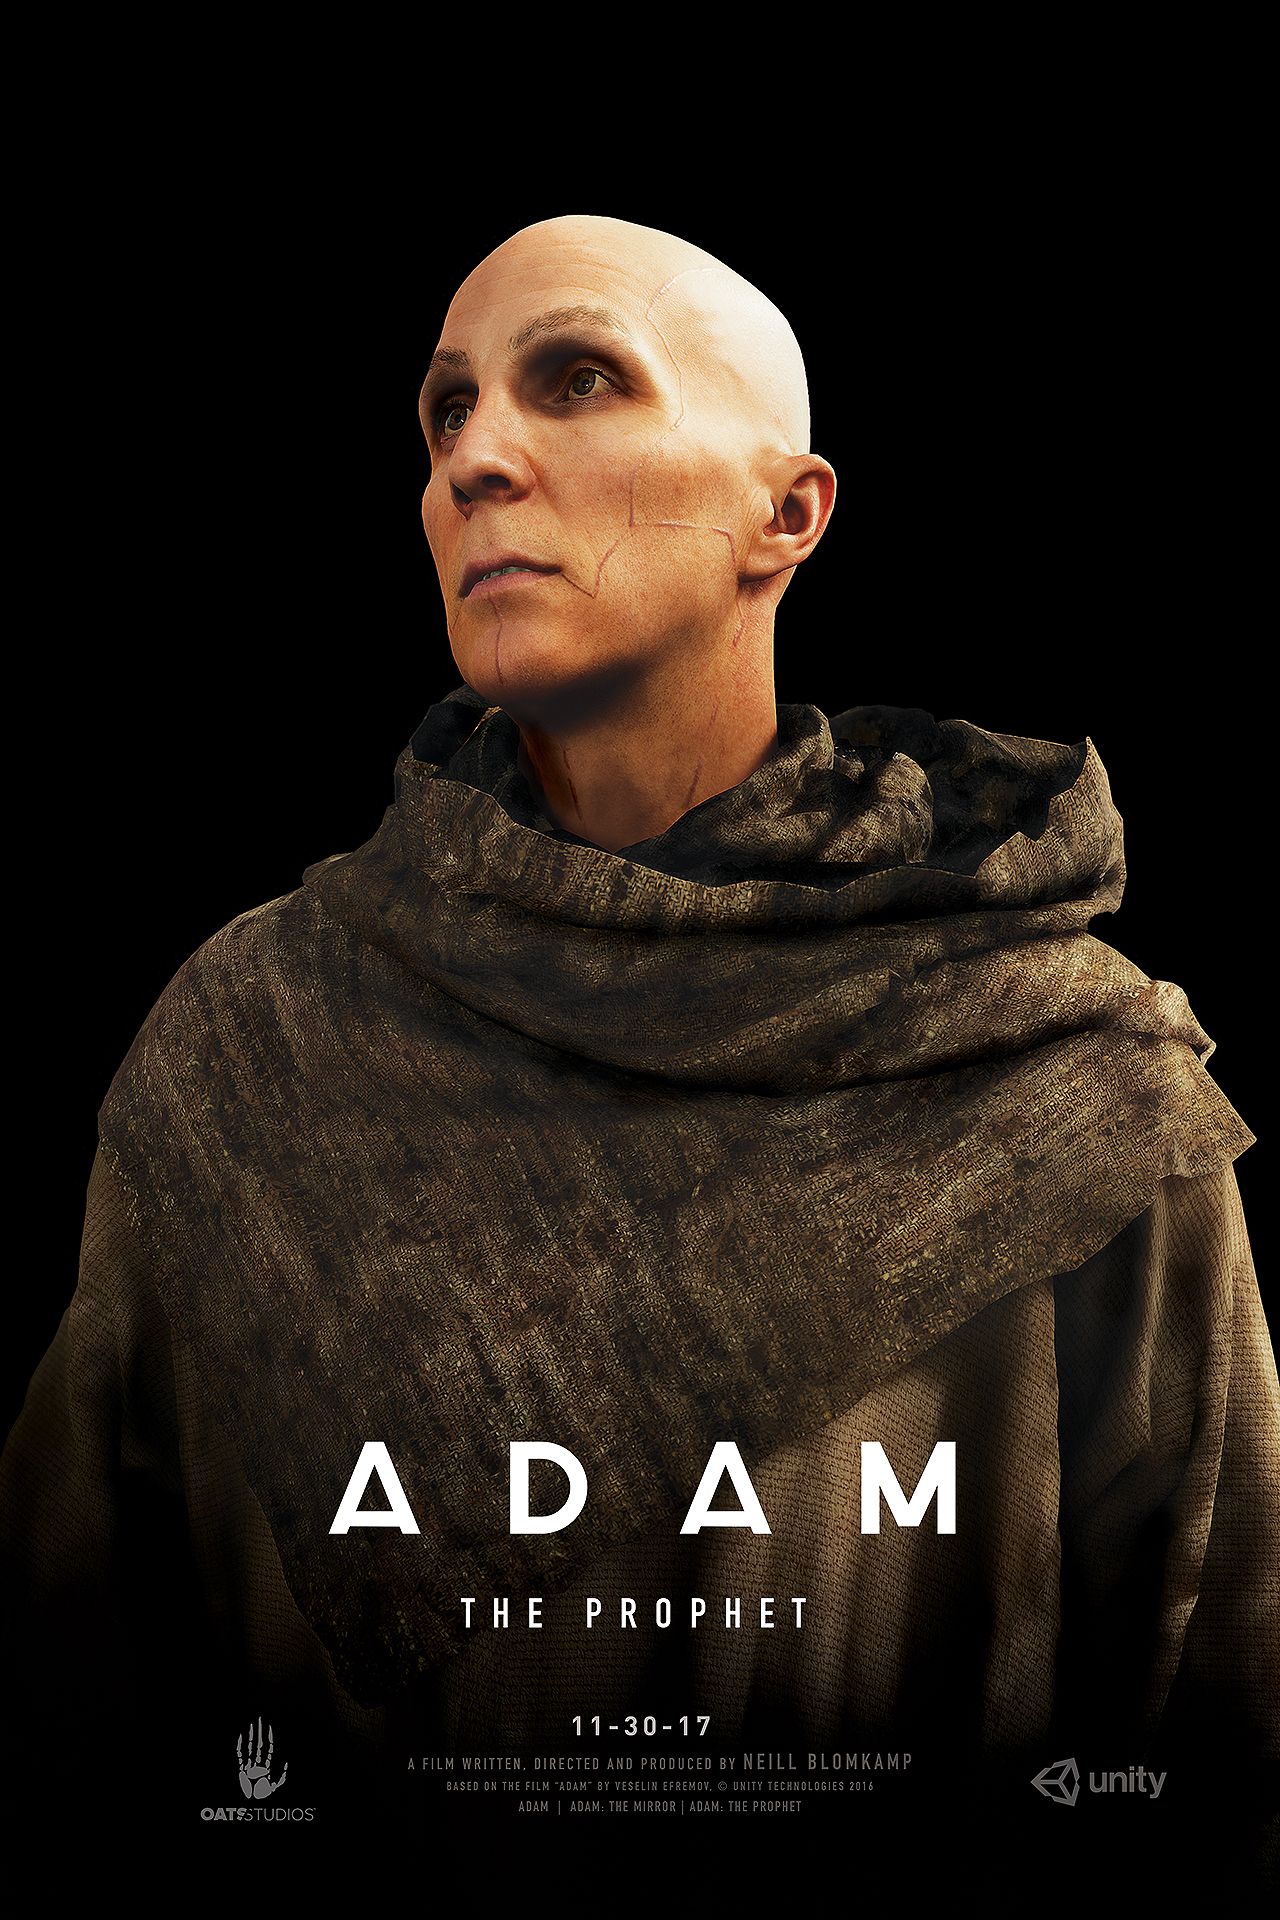 ADAM: The Prophet